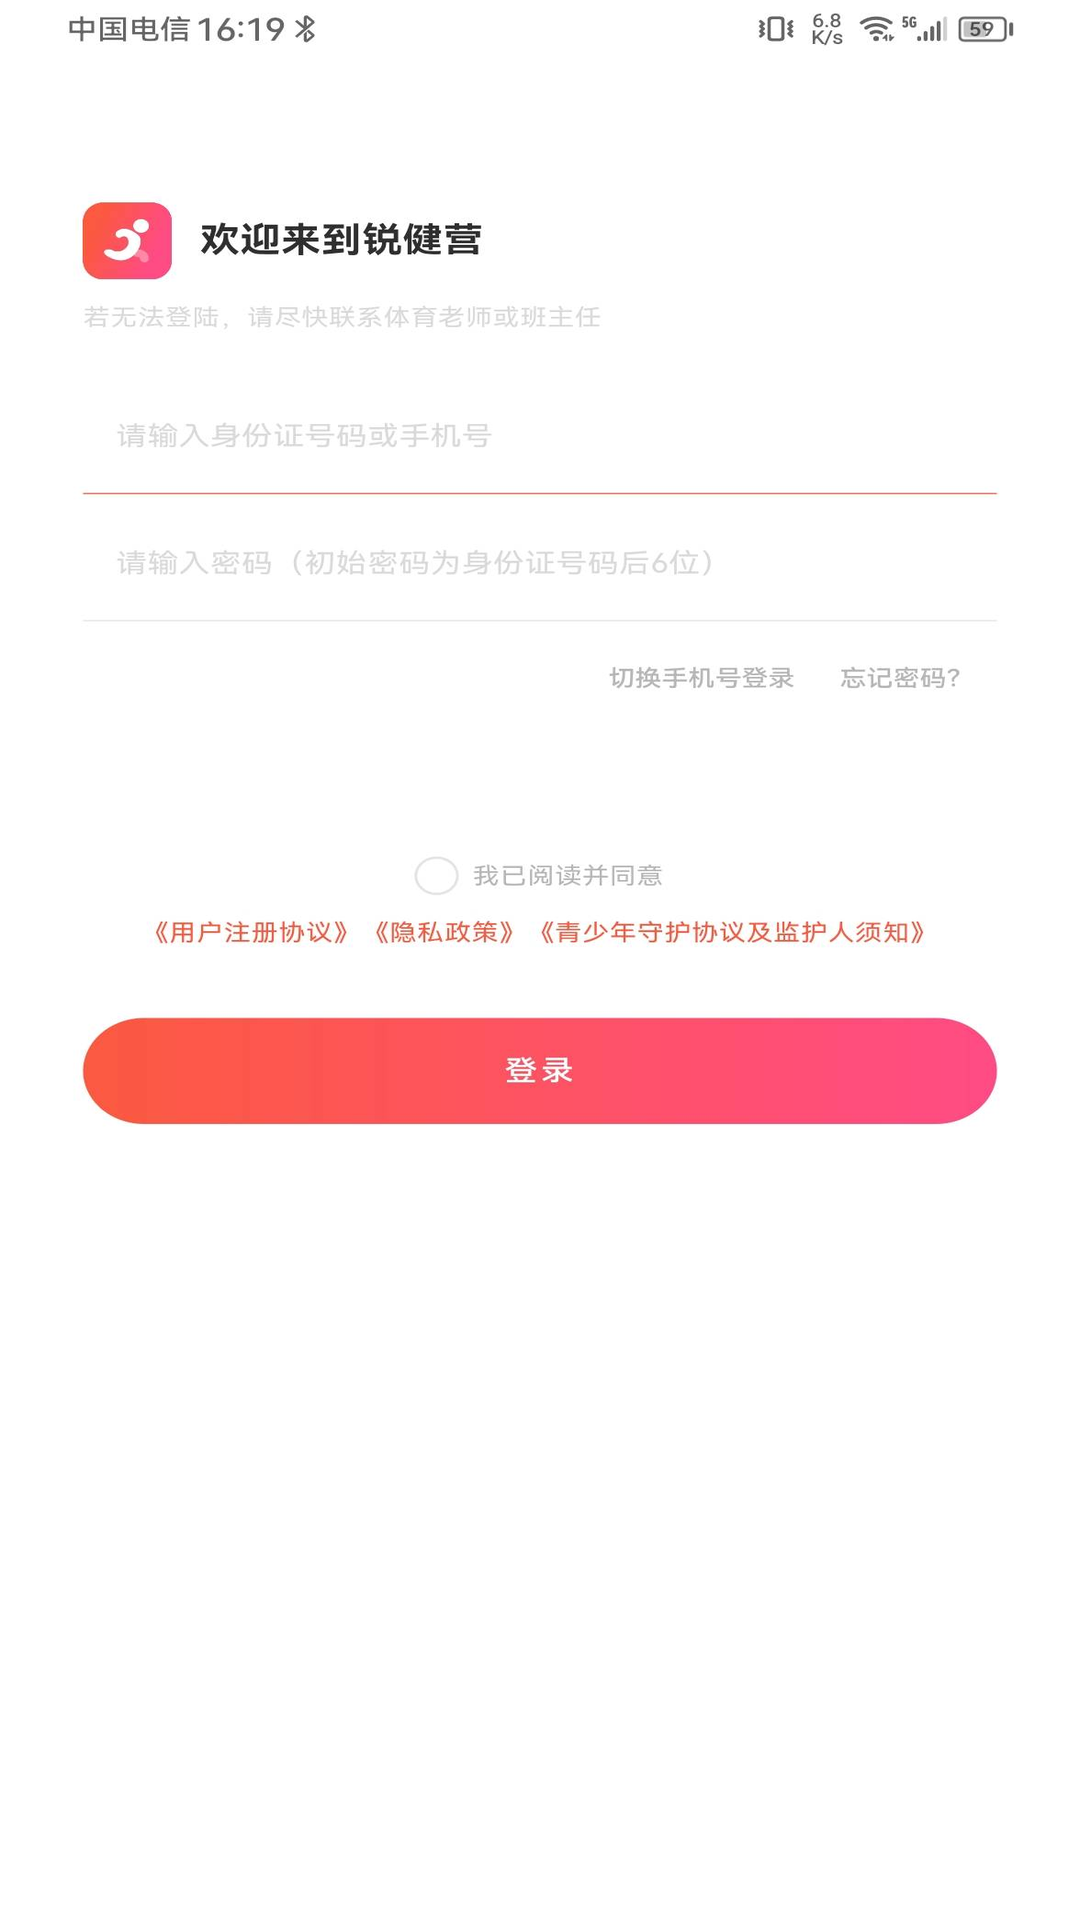 锐健营app下载,锐健营app官方版 v1.0.0.11